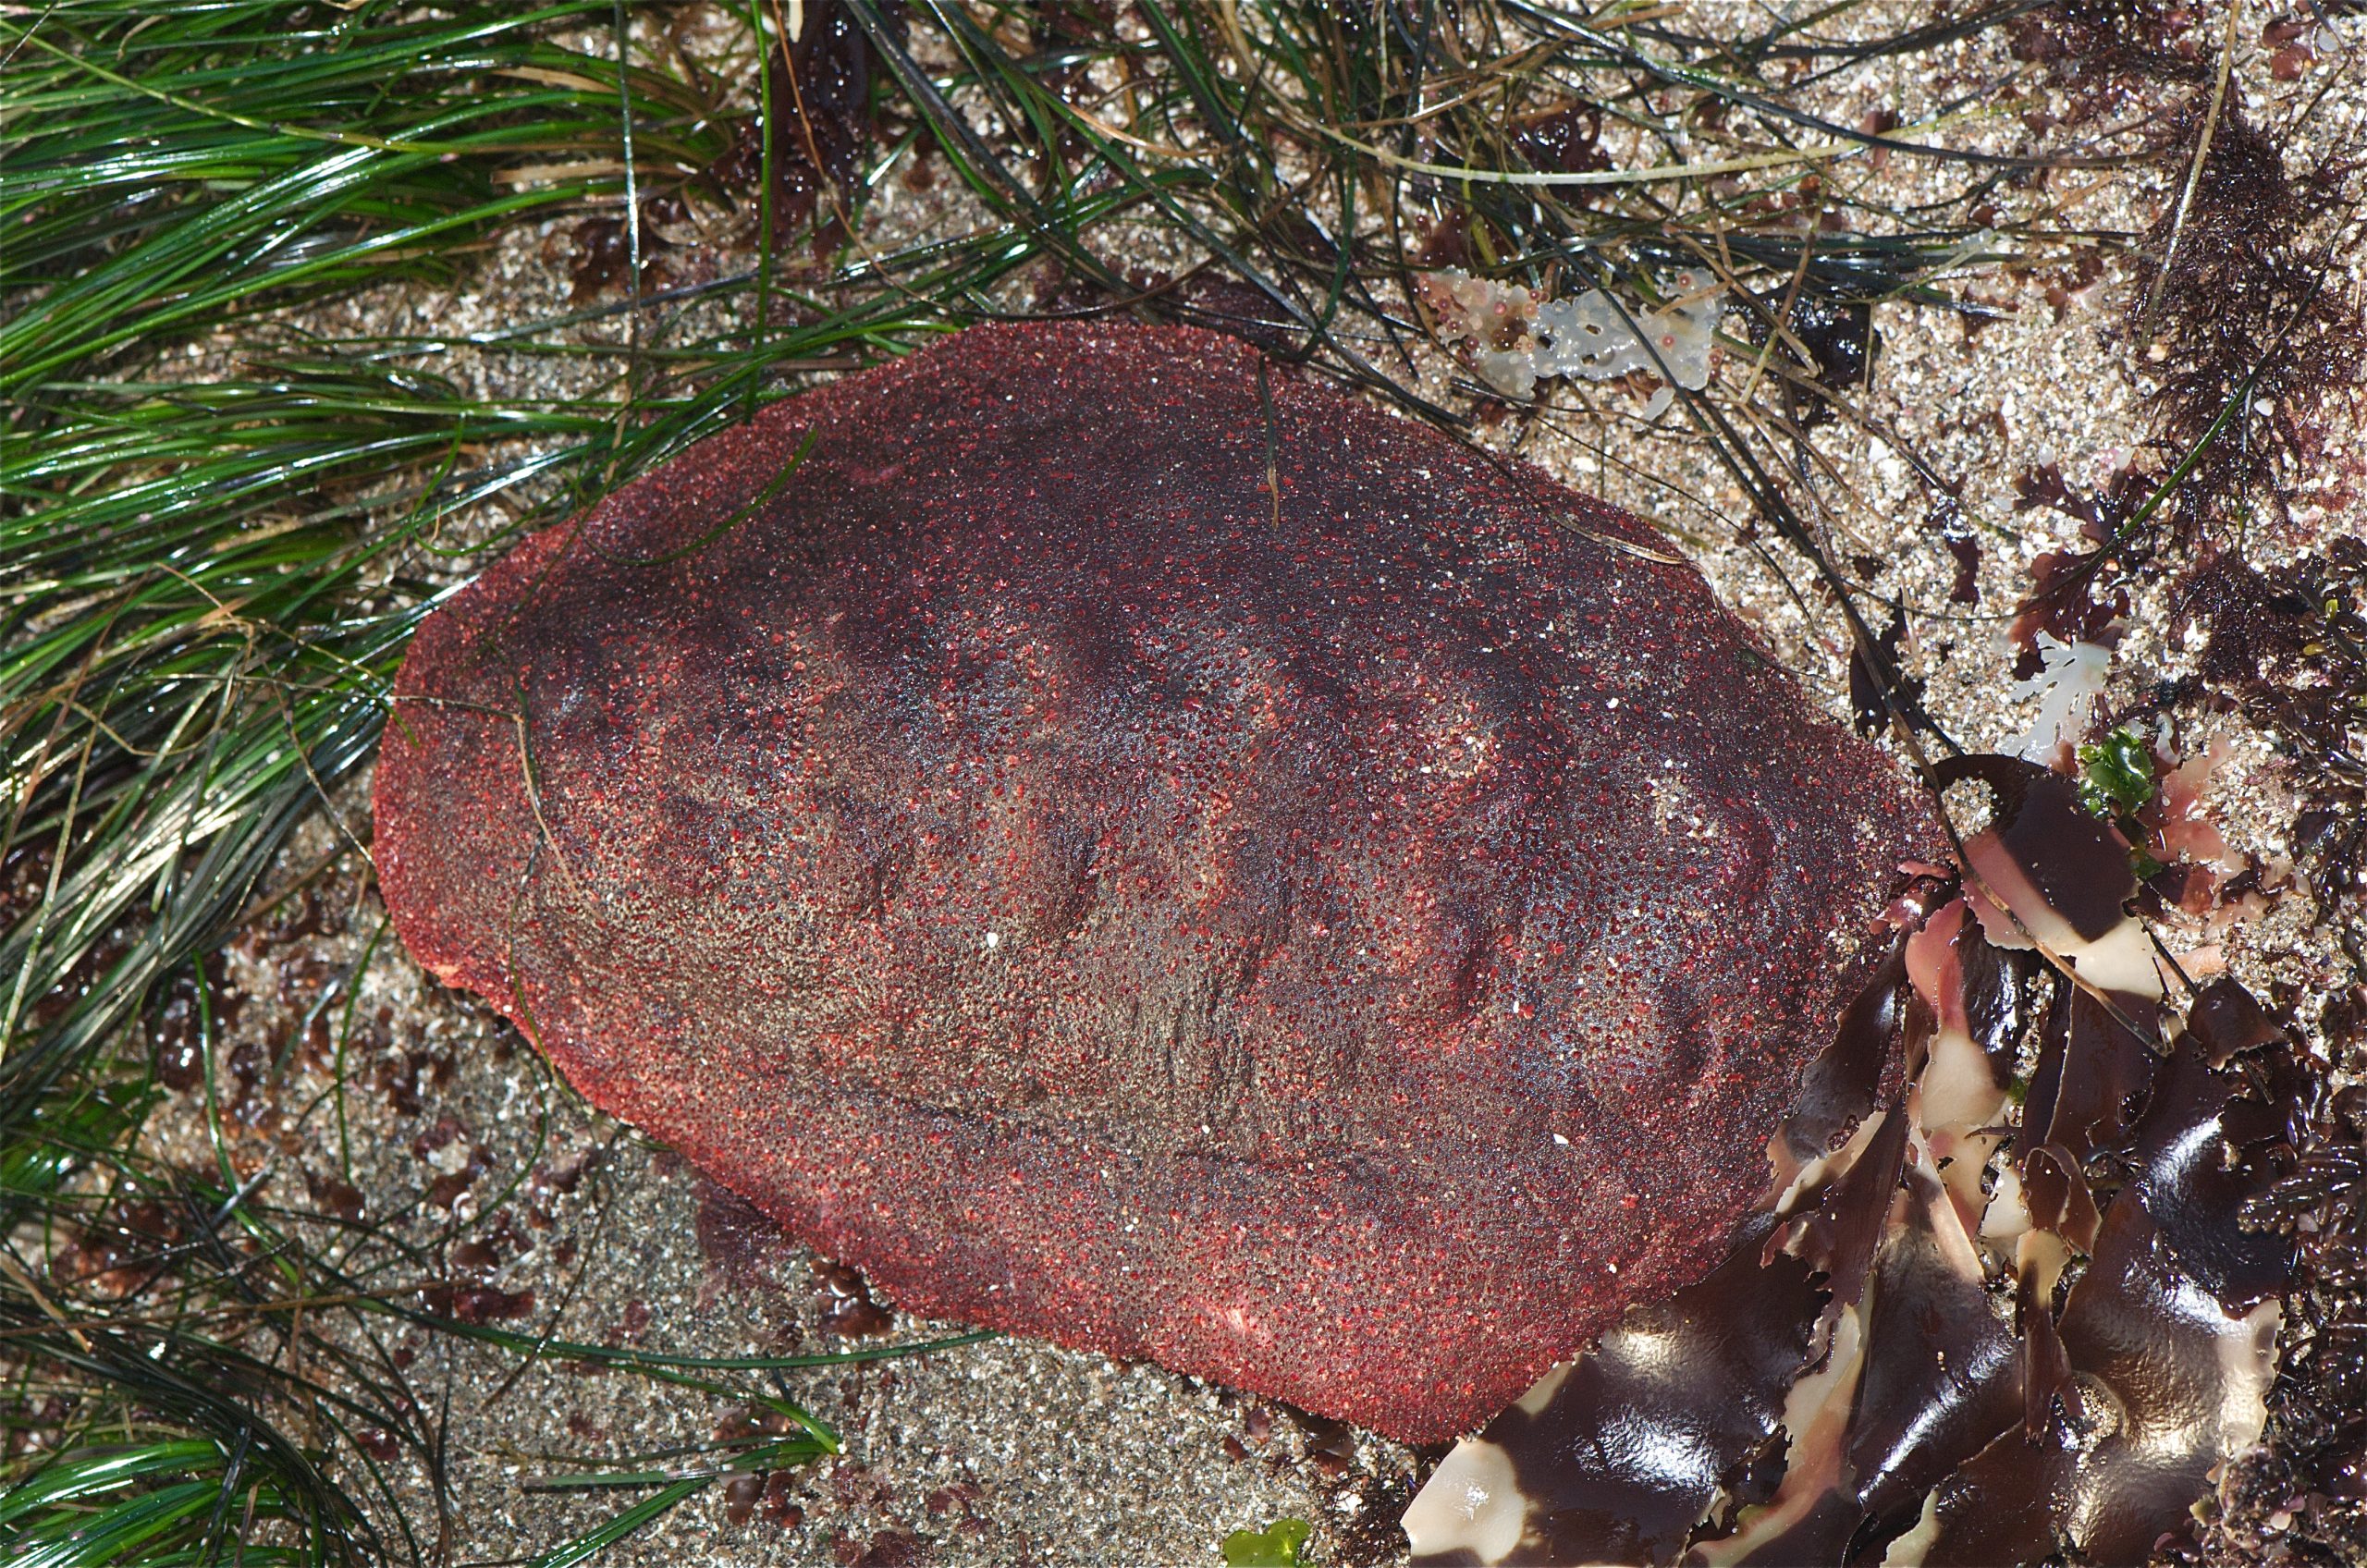 野生的“流浪肉卷”软体动物。照片来自Jerry Kirkhart。